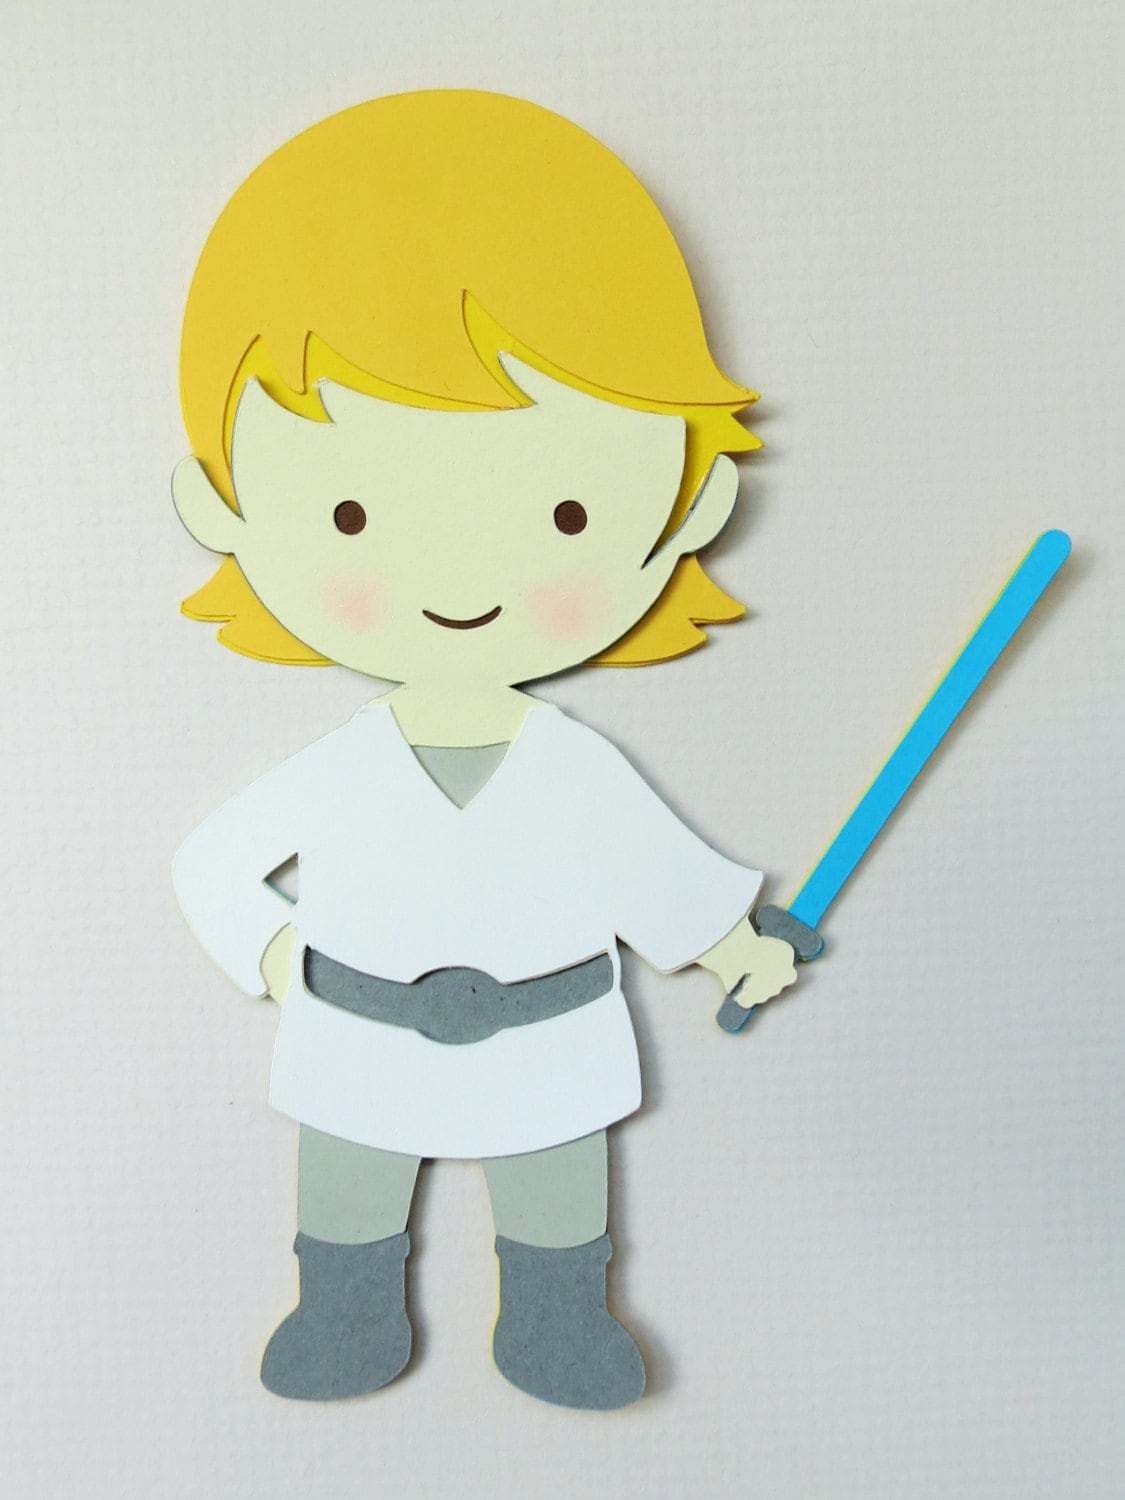 Star Wars Inspired Luke Skywalker Paper Die Cut Paper Doll Etsy